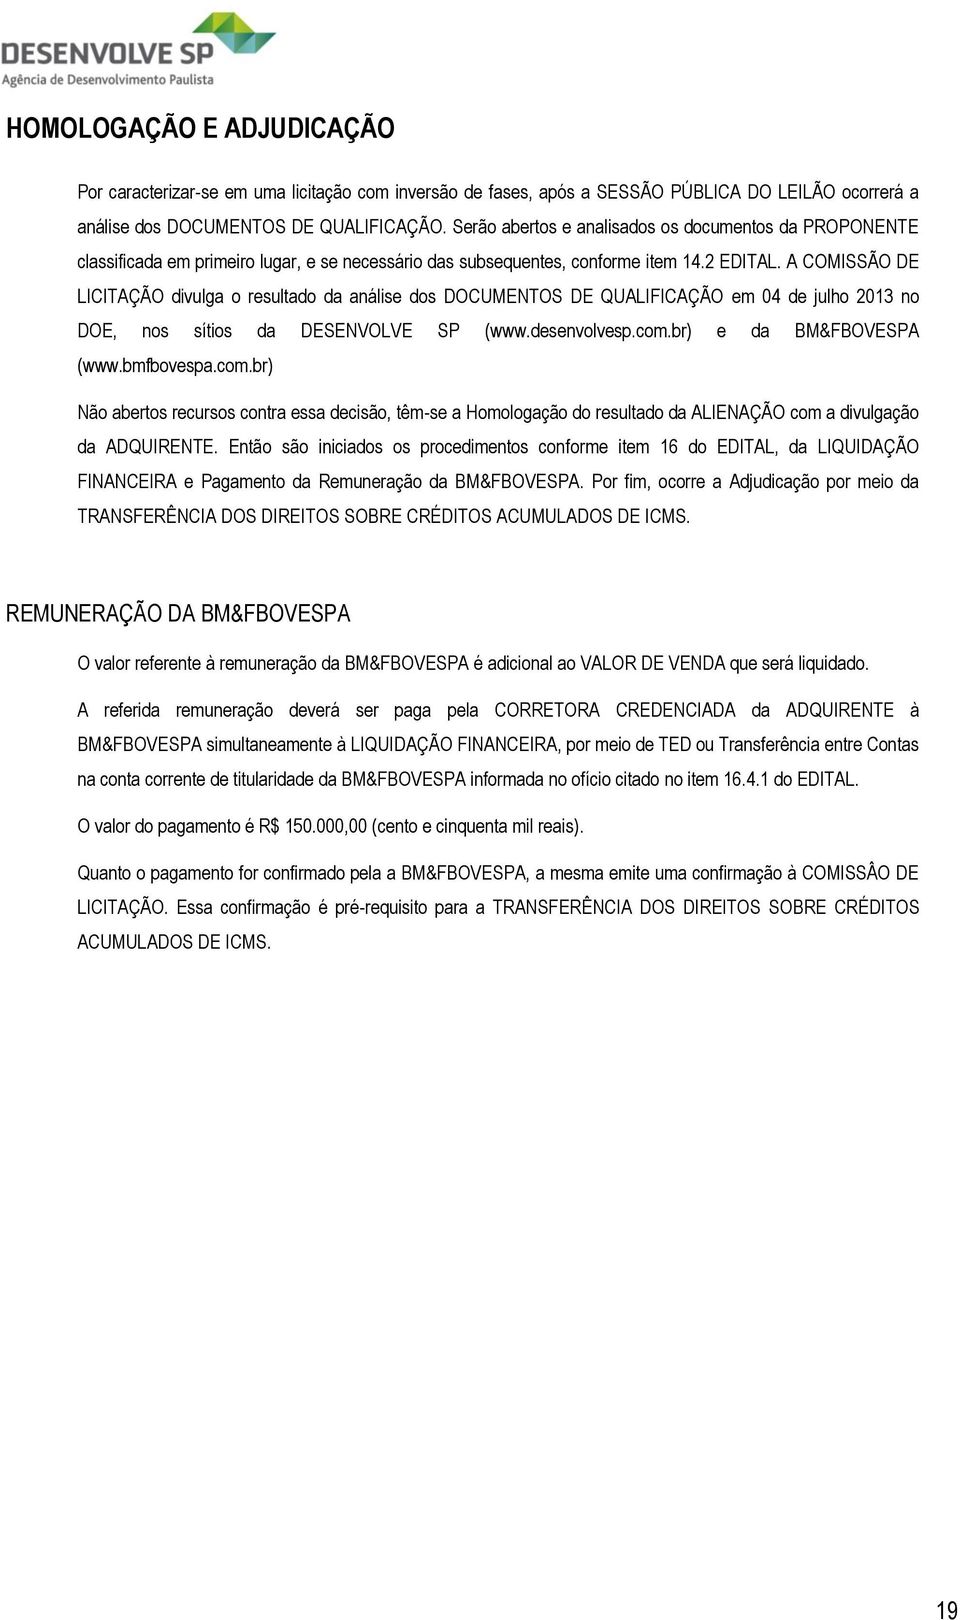 A COMISSÃO DE LICITAÇÃO divulga o resultado da análise dos DOCUMENTOS DE QUALIFICAÇÃO em 04 de julho 2013 no DOE, nos sítios da DESENVOLVE SP (www.desenvolvesp.com.br) e da BM&FBOVESPA (www.